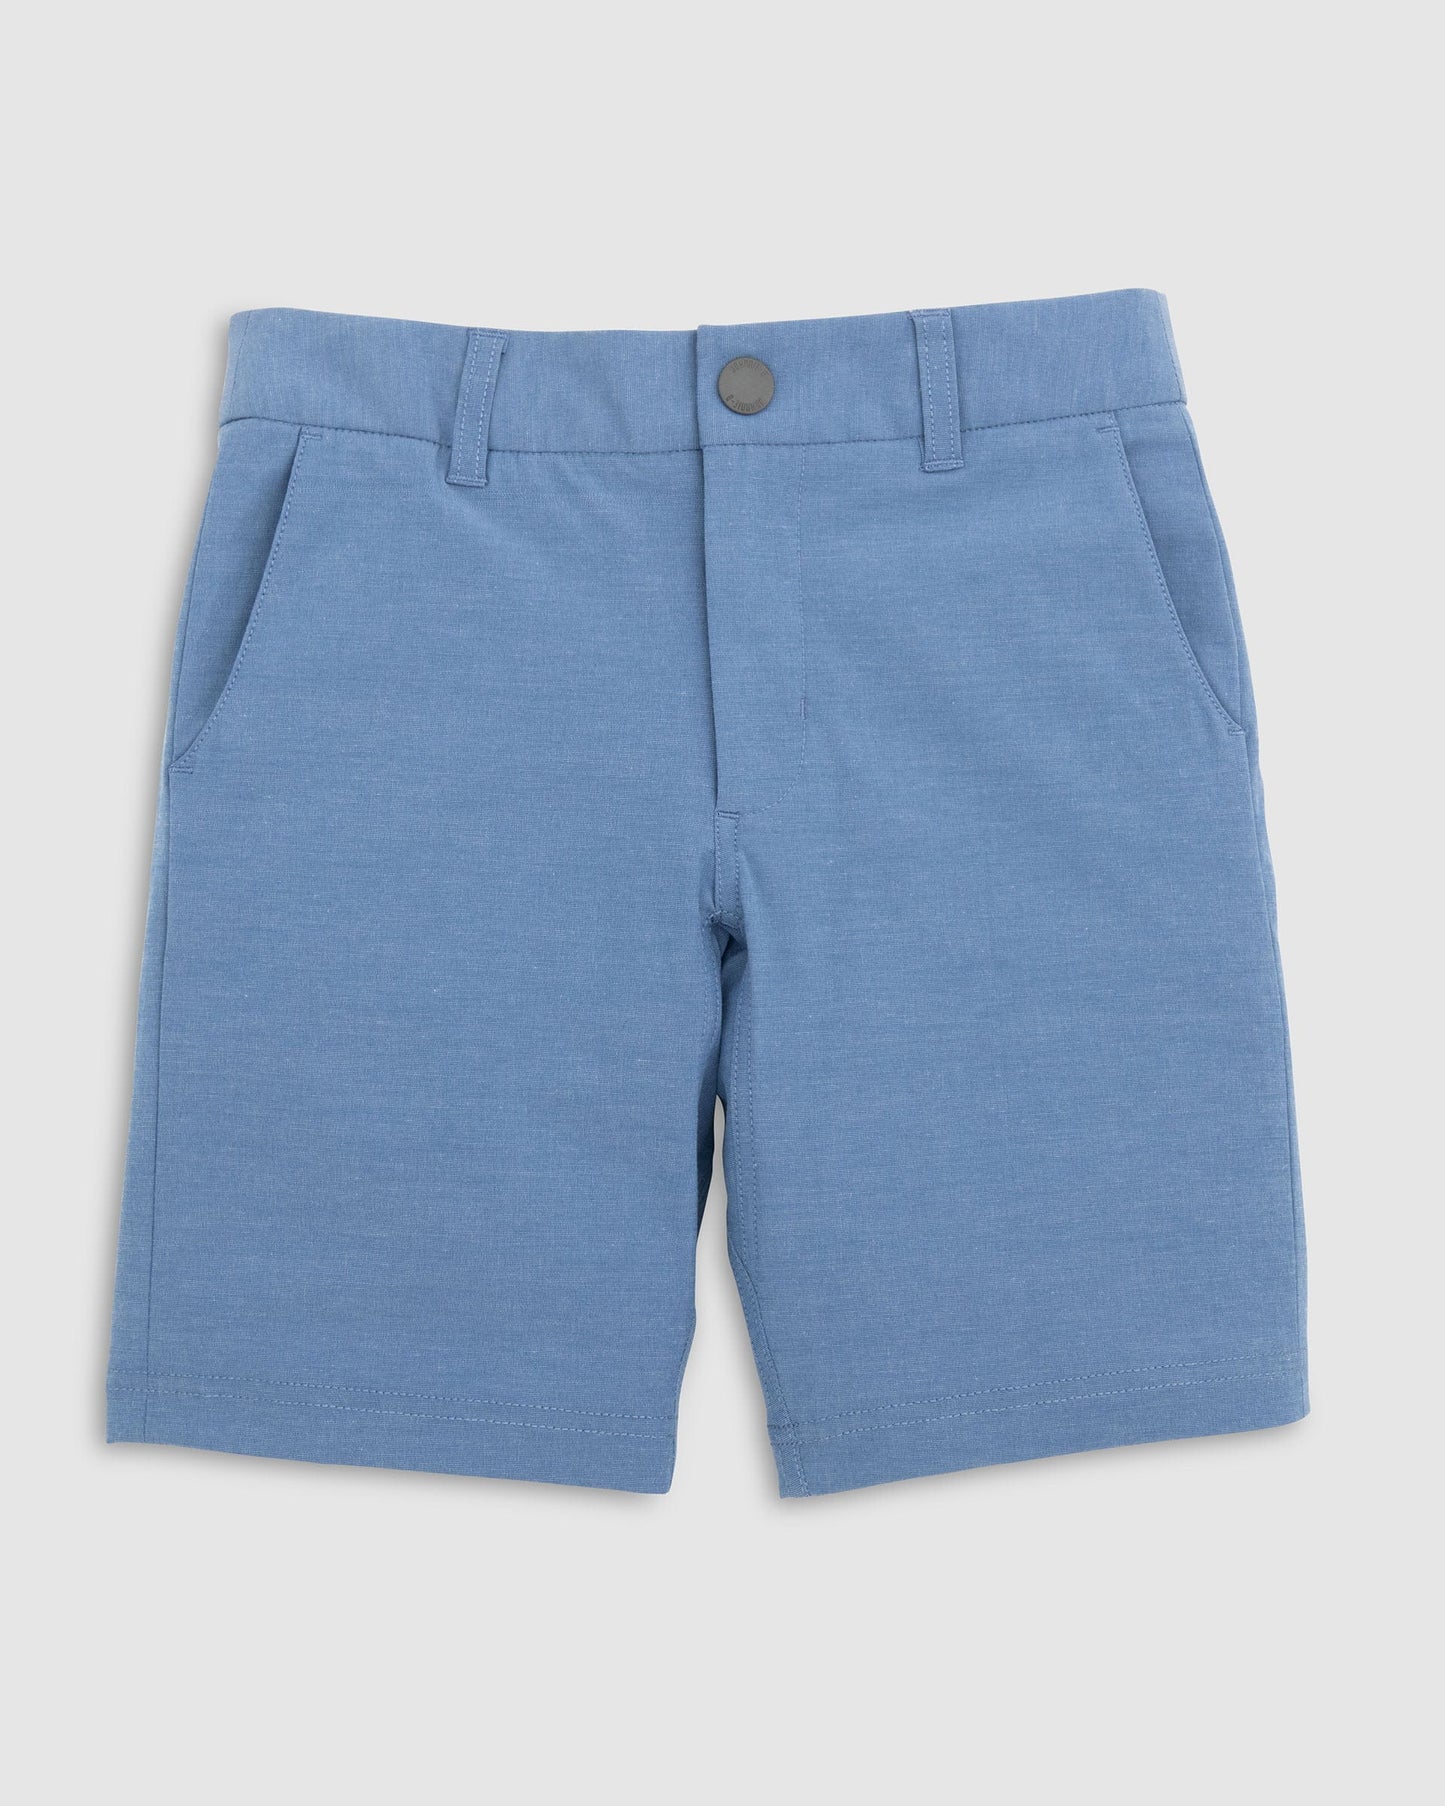 Calcutta Shorts